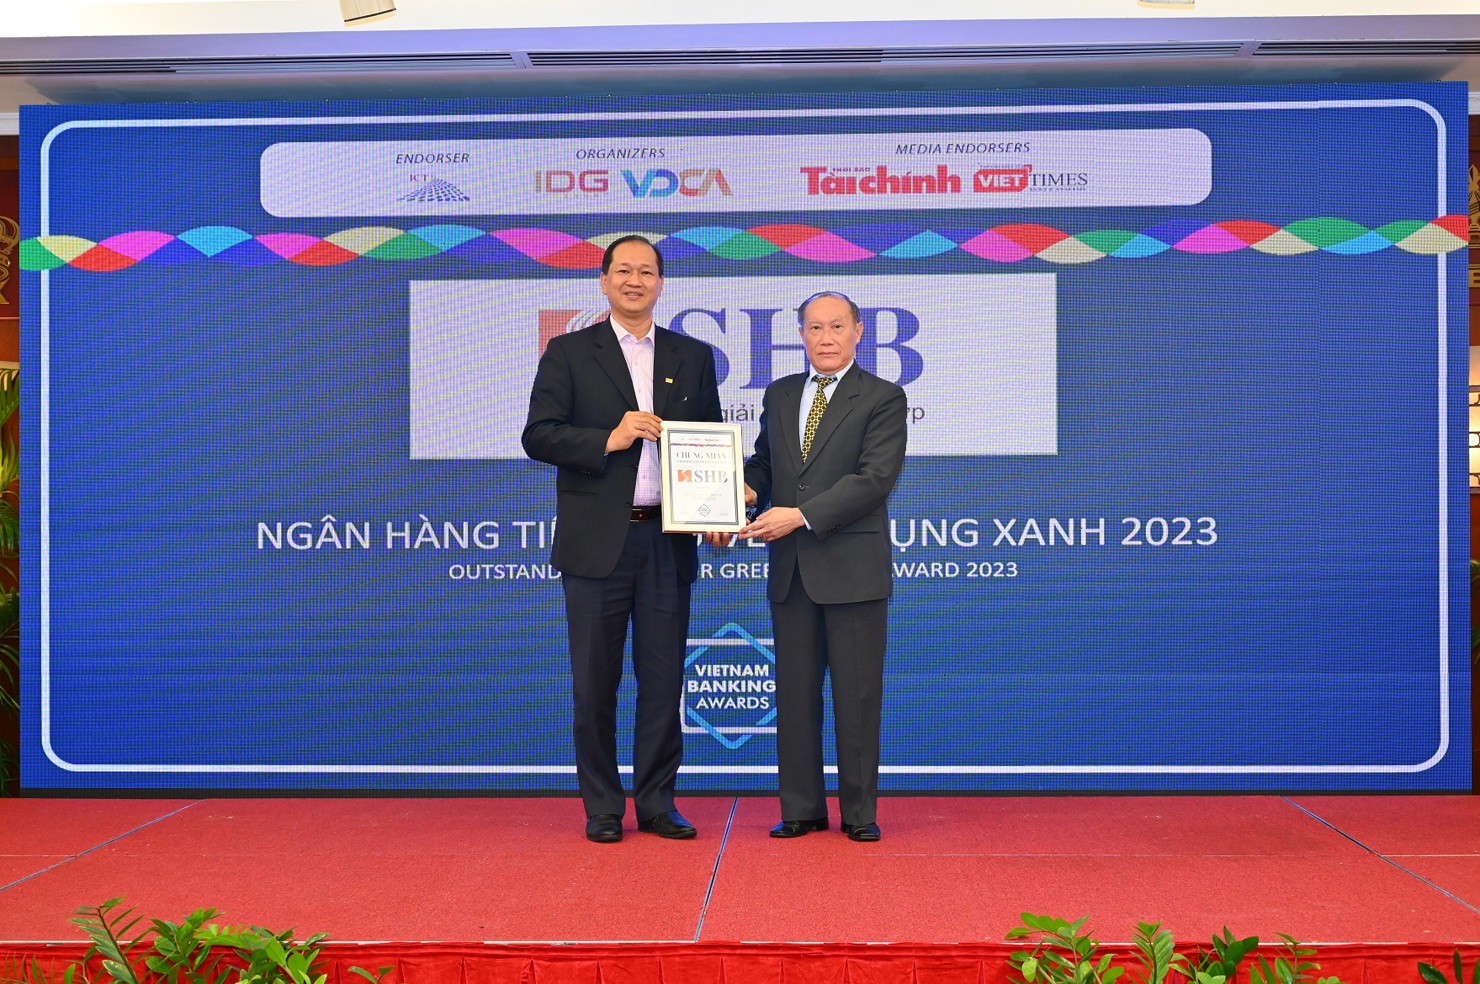 Ông Trần Xuân Huy – Phó Tổng Giám đốc SHB (bên trái) đại diện ngân hàng nhận giải thưởng “Ngân hàng Tiêu biểu về Tín dụng Xanh năm 2022”